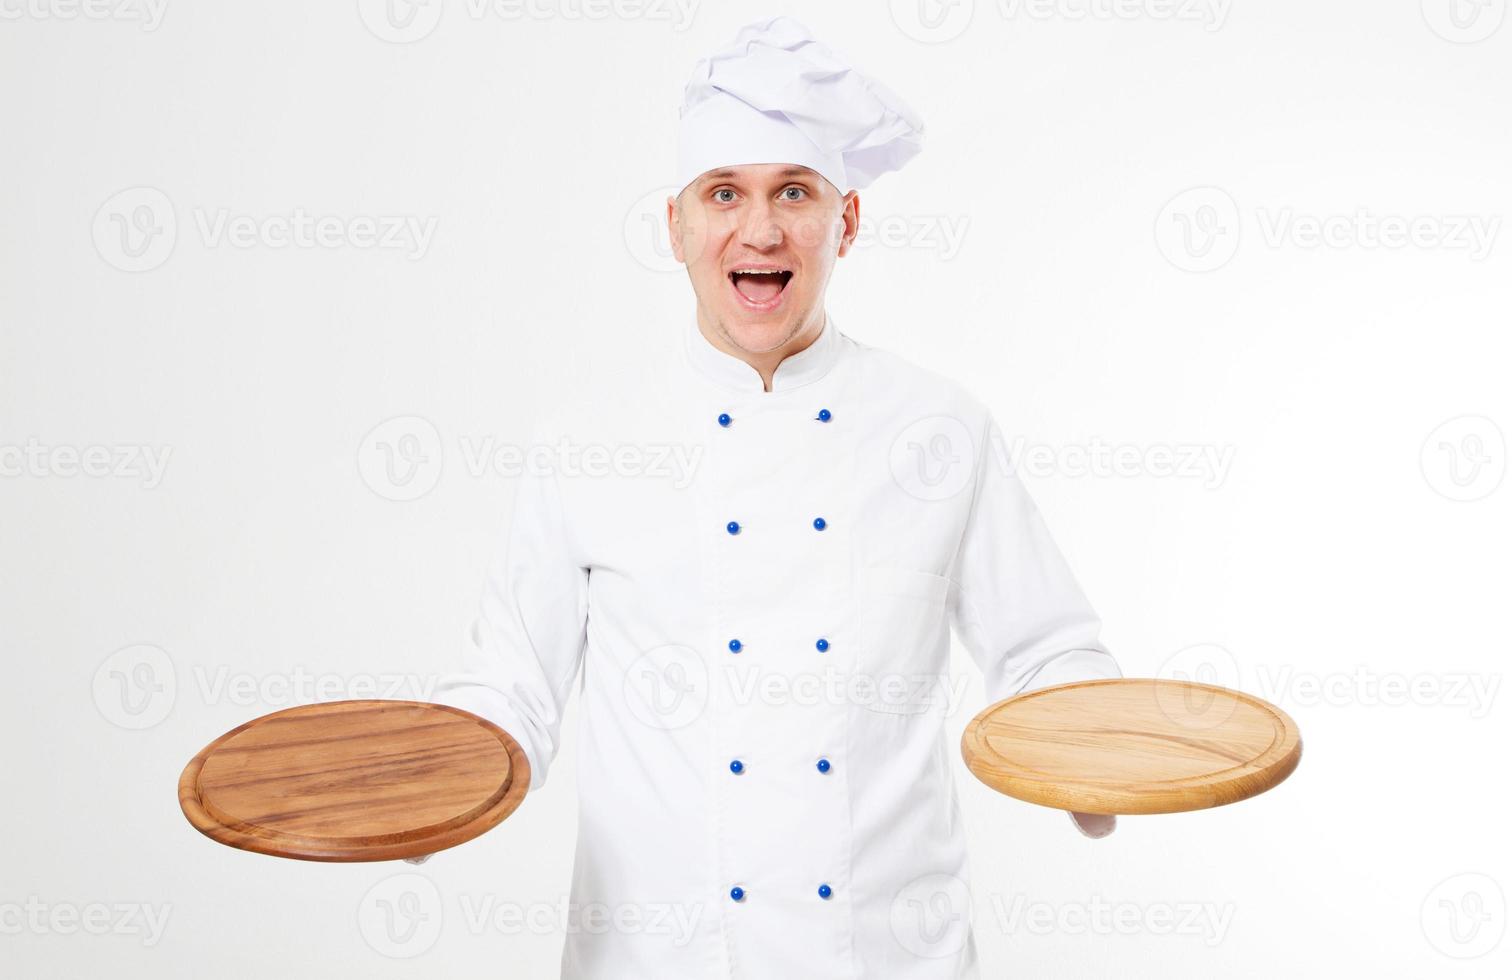 känslomässigt leende manlig kock med tomt pizzabord i handen, välsmakande matkoncept foto